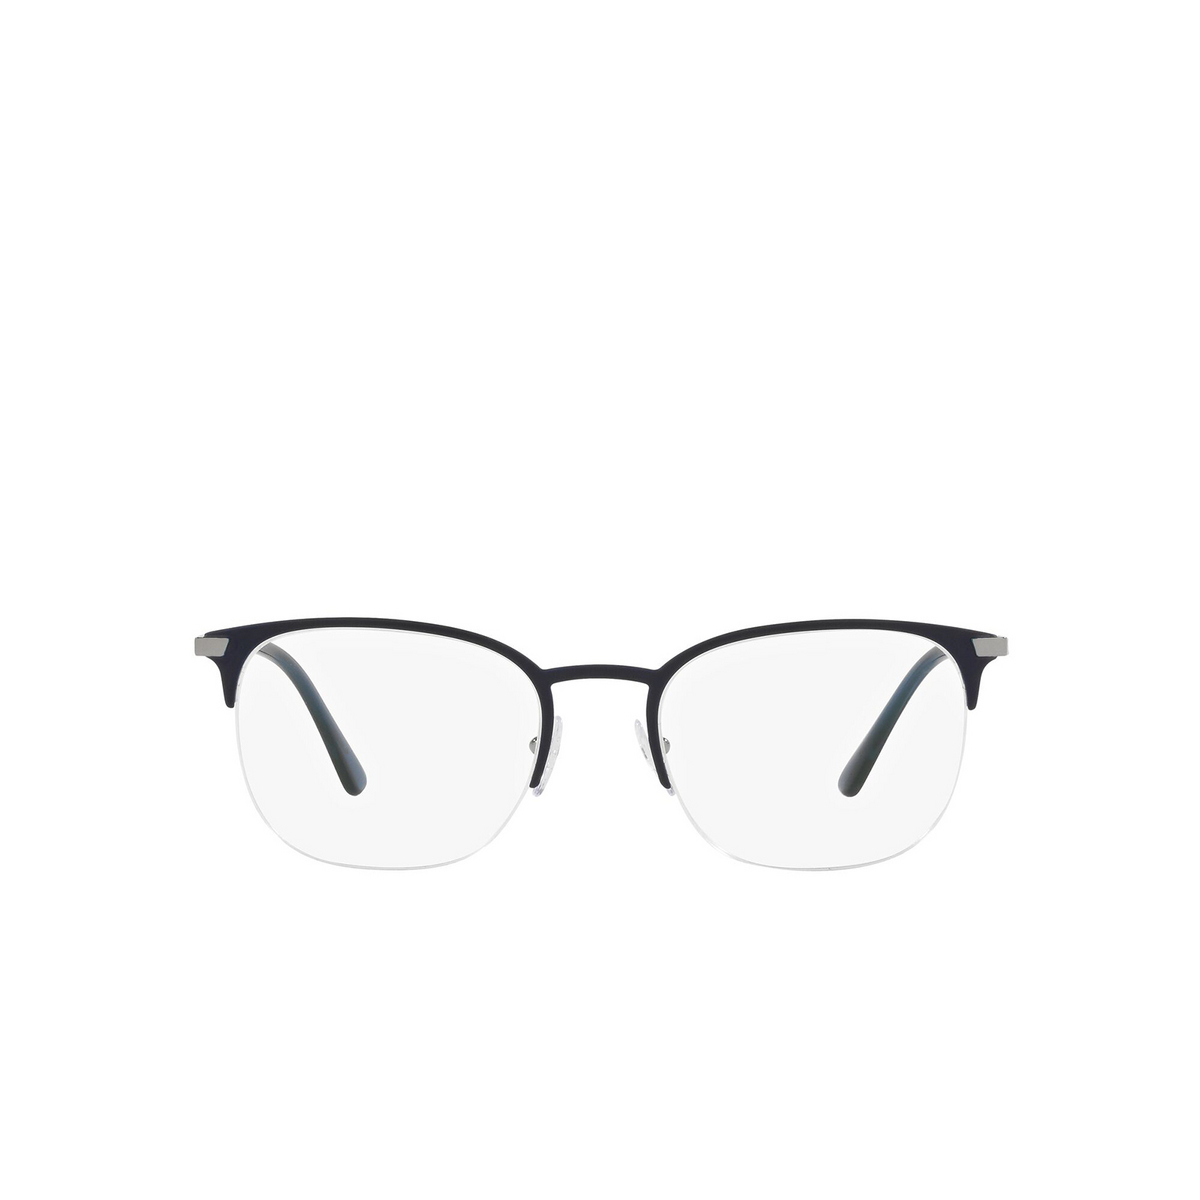 Prada® Oval Eyeglasses: PR 57YV color Matte Blue 02N1O1 - front view.